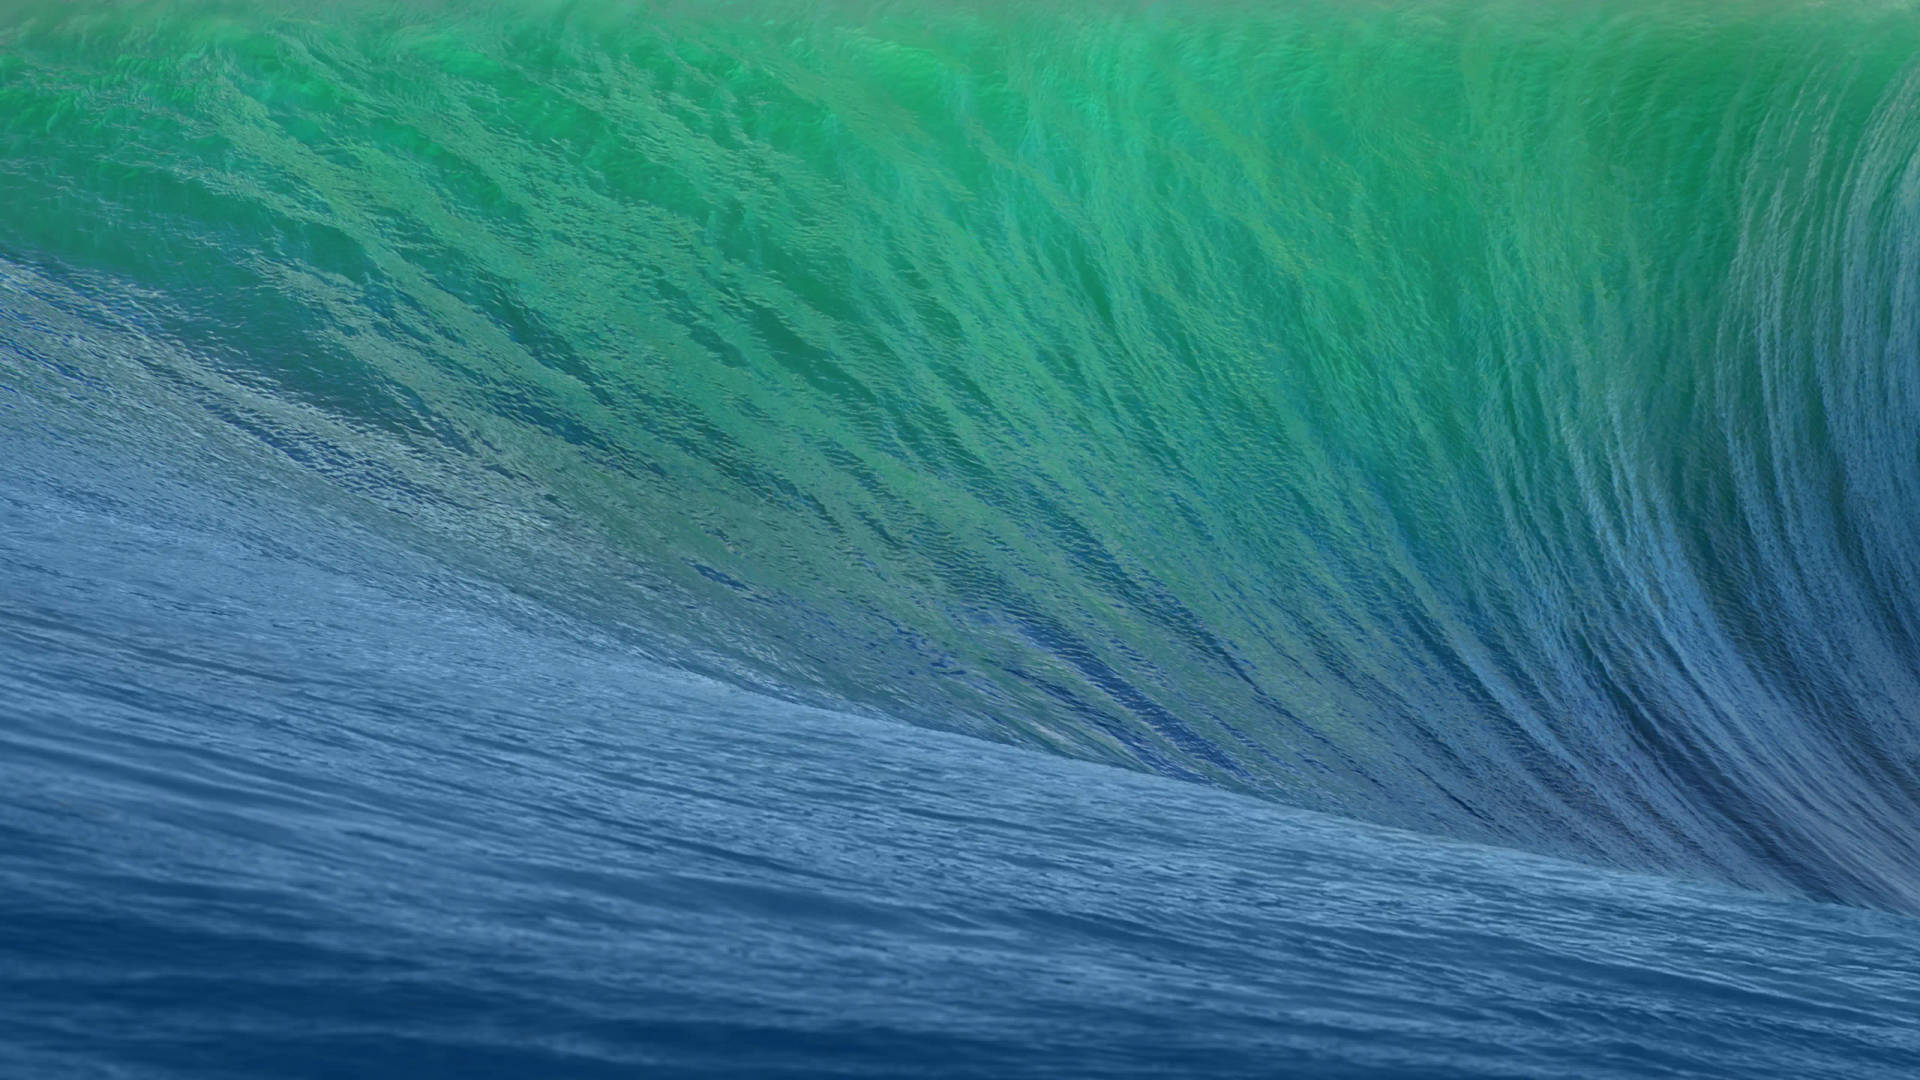 Macbook Air 4k Green Surf Wave Background